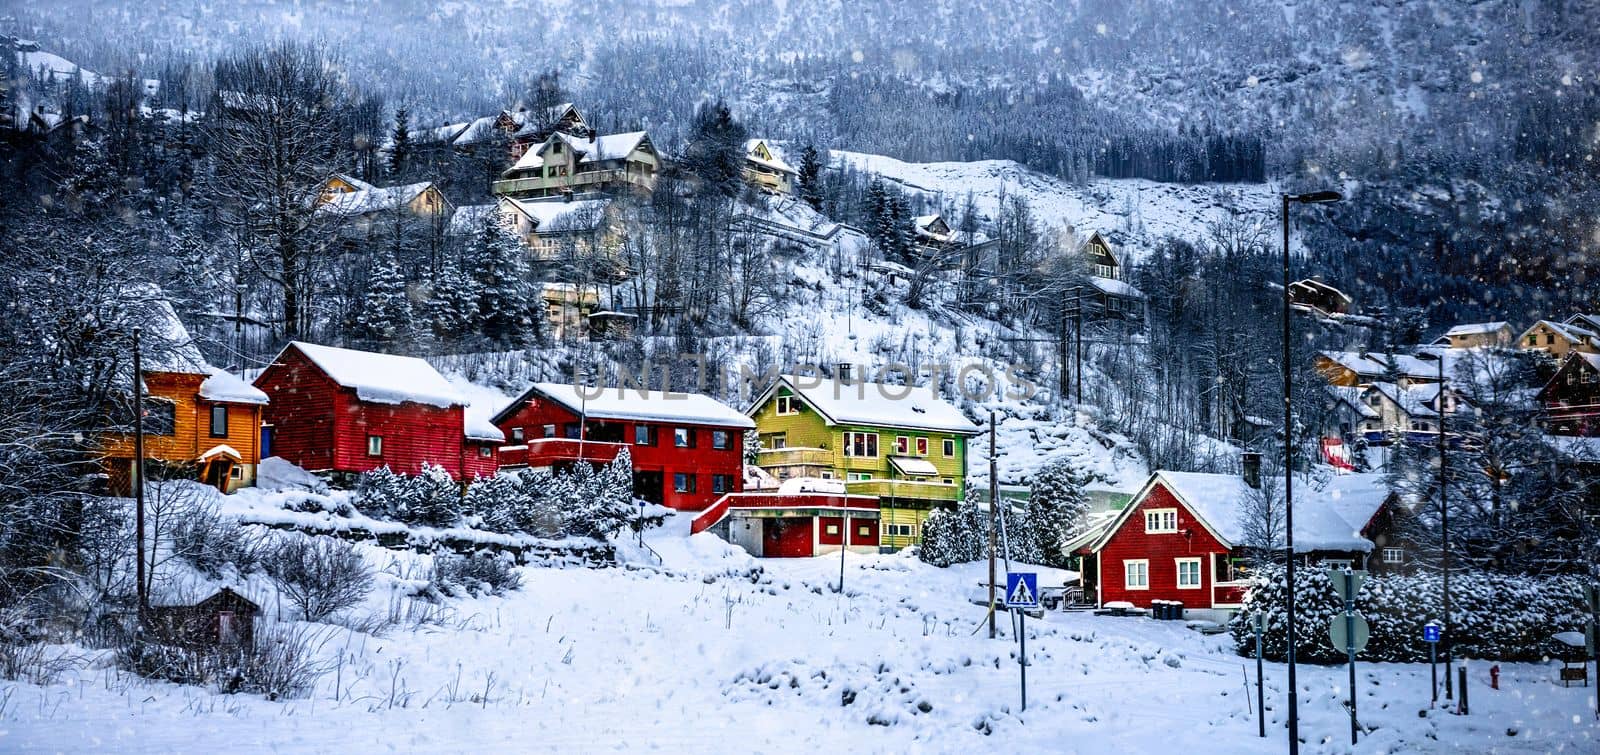 Scenery norvegian landscape by tan4ikk1